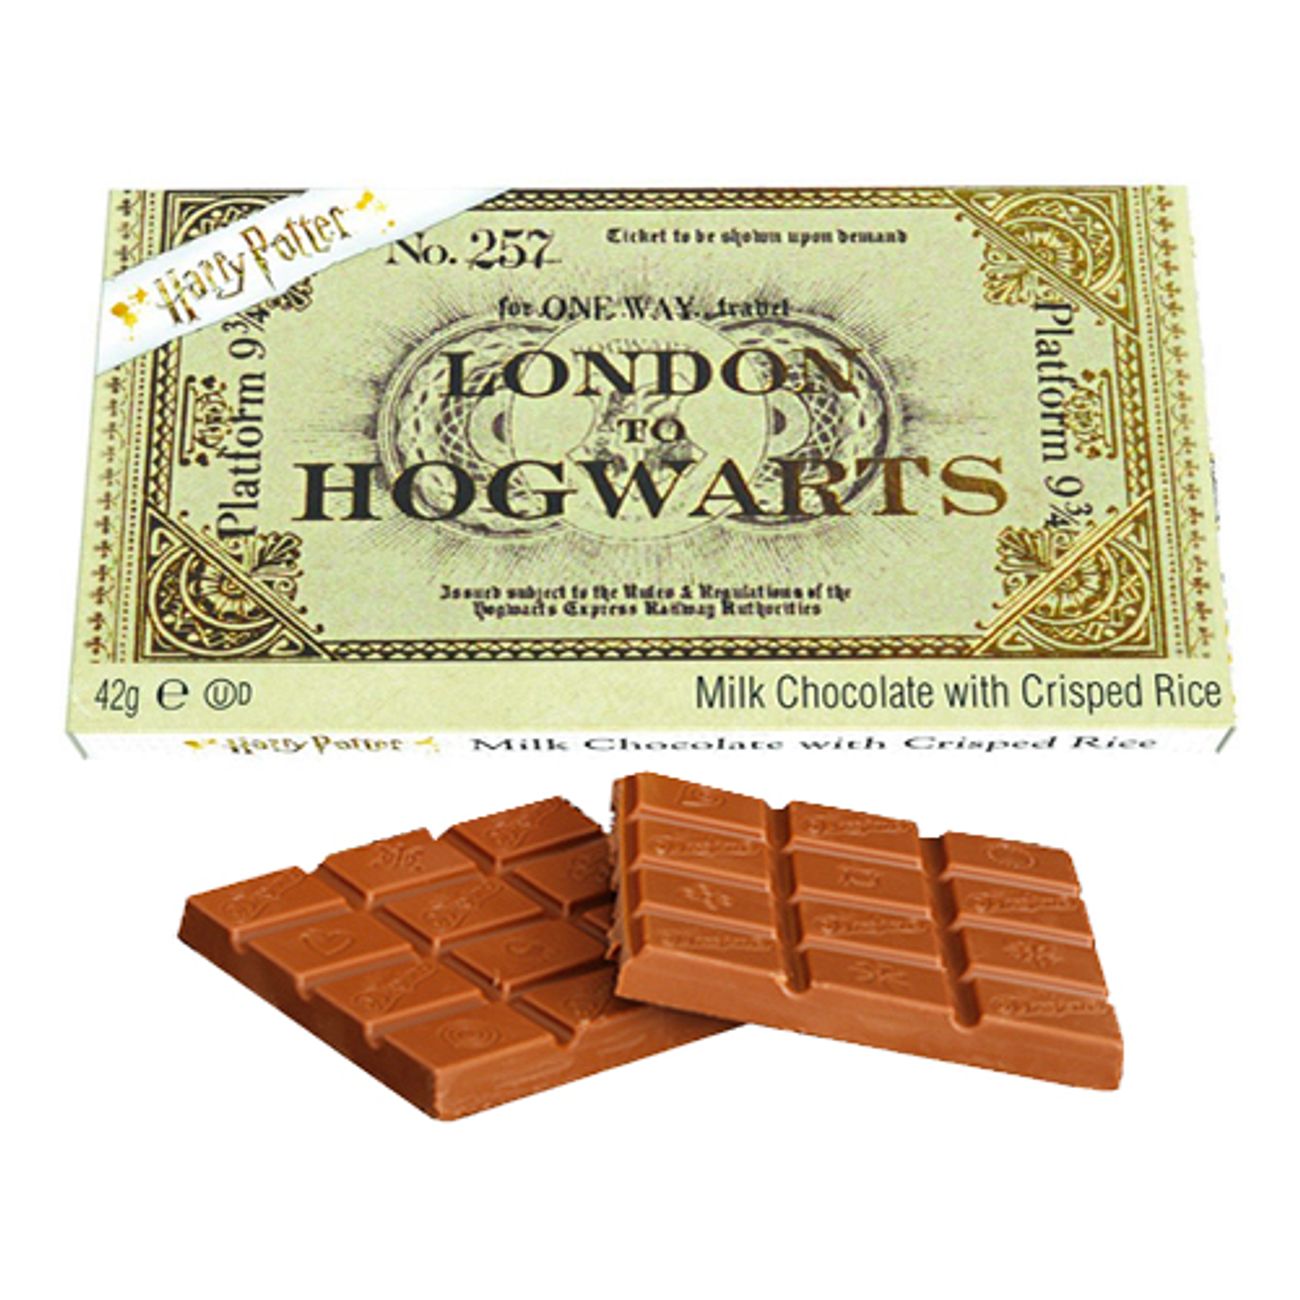 biljett-till-hogwarts-chokladkaka-72377-3